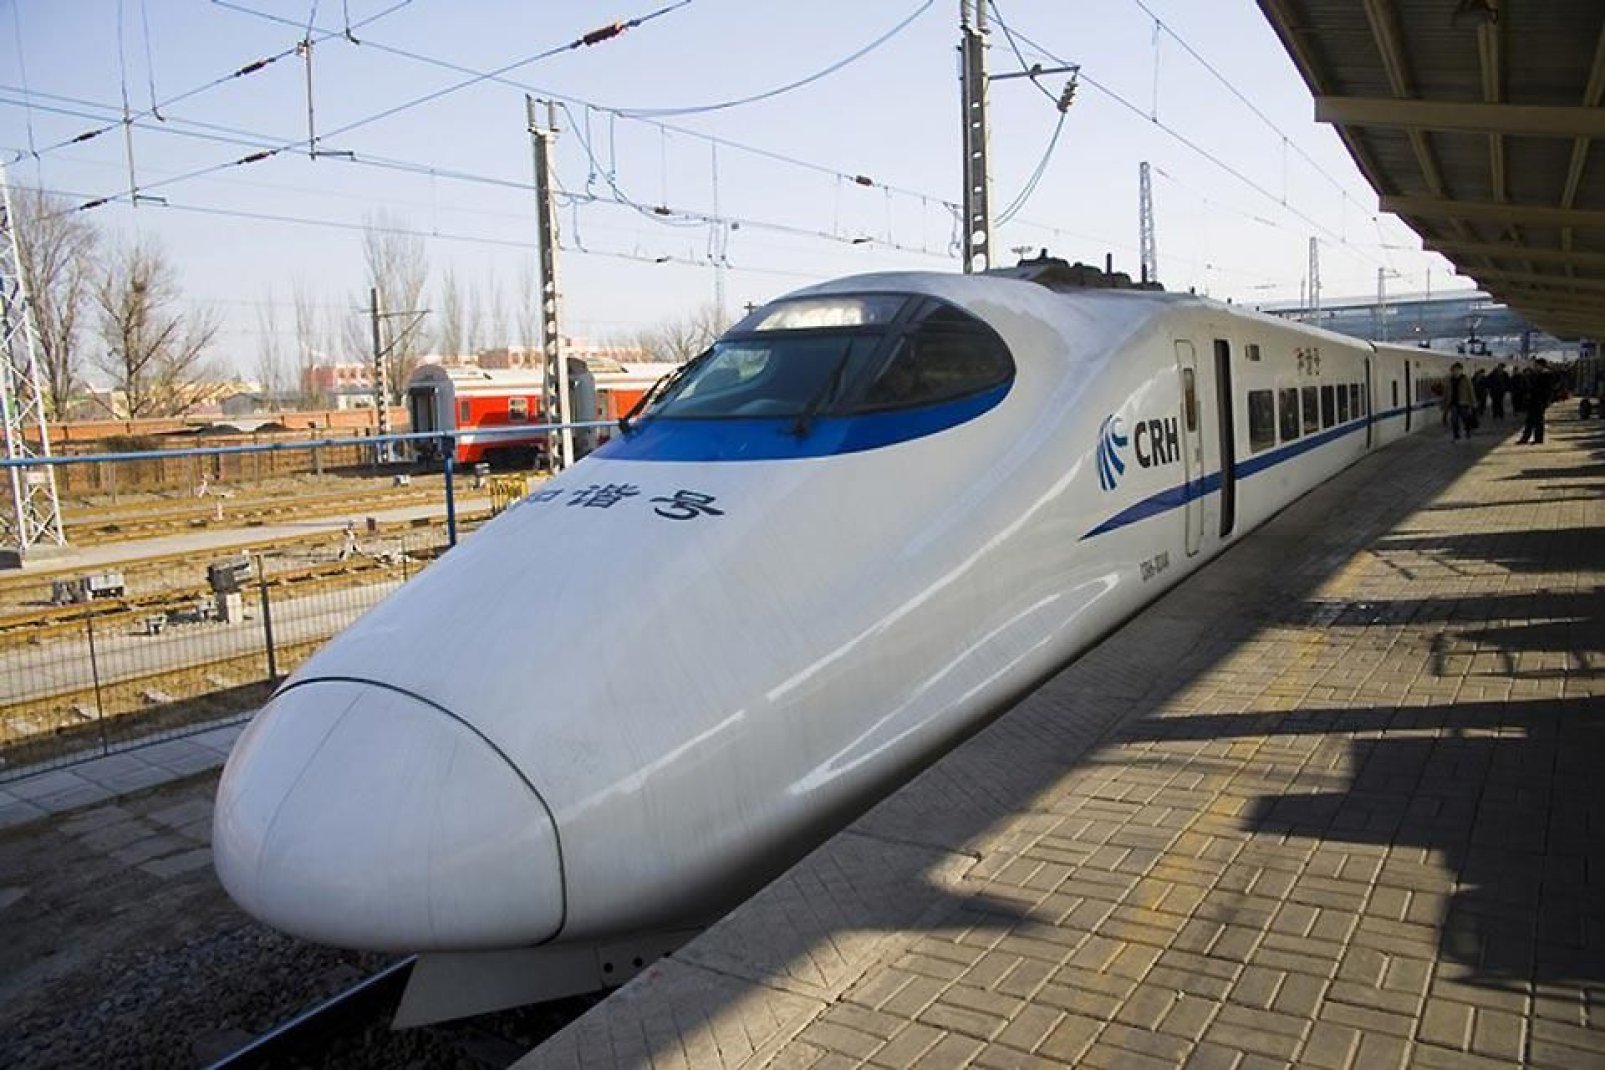 Tianjin si trova a 150 km dalla capitale cinese. È molto facile da raggiungere prendendo il treno.